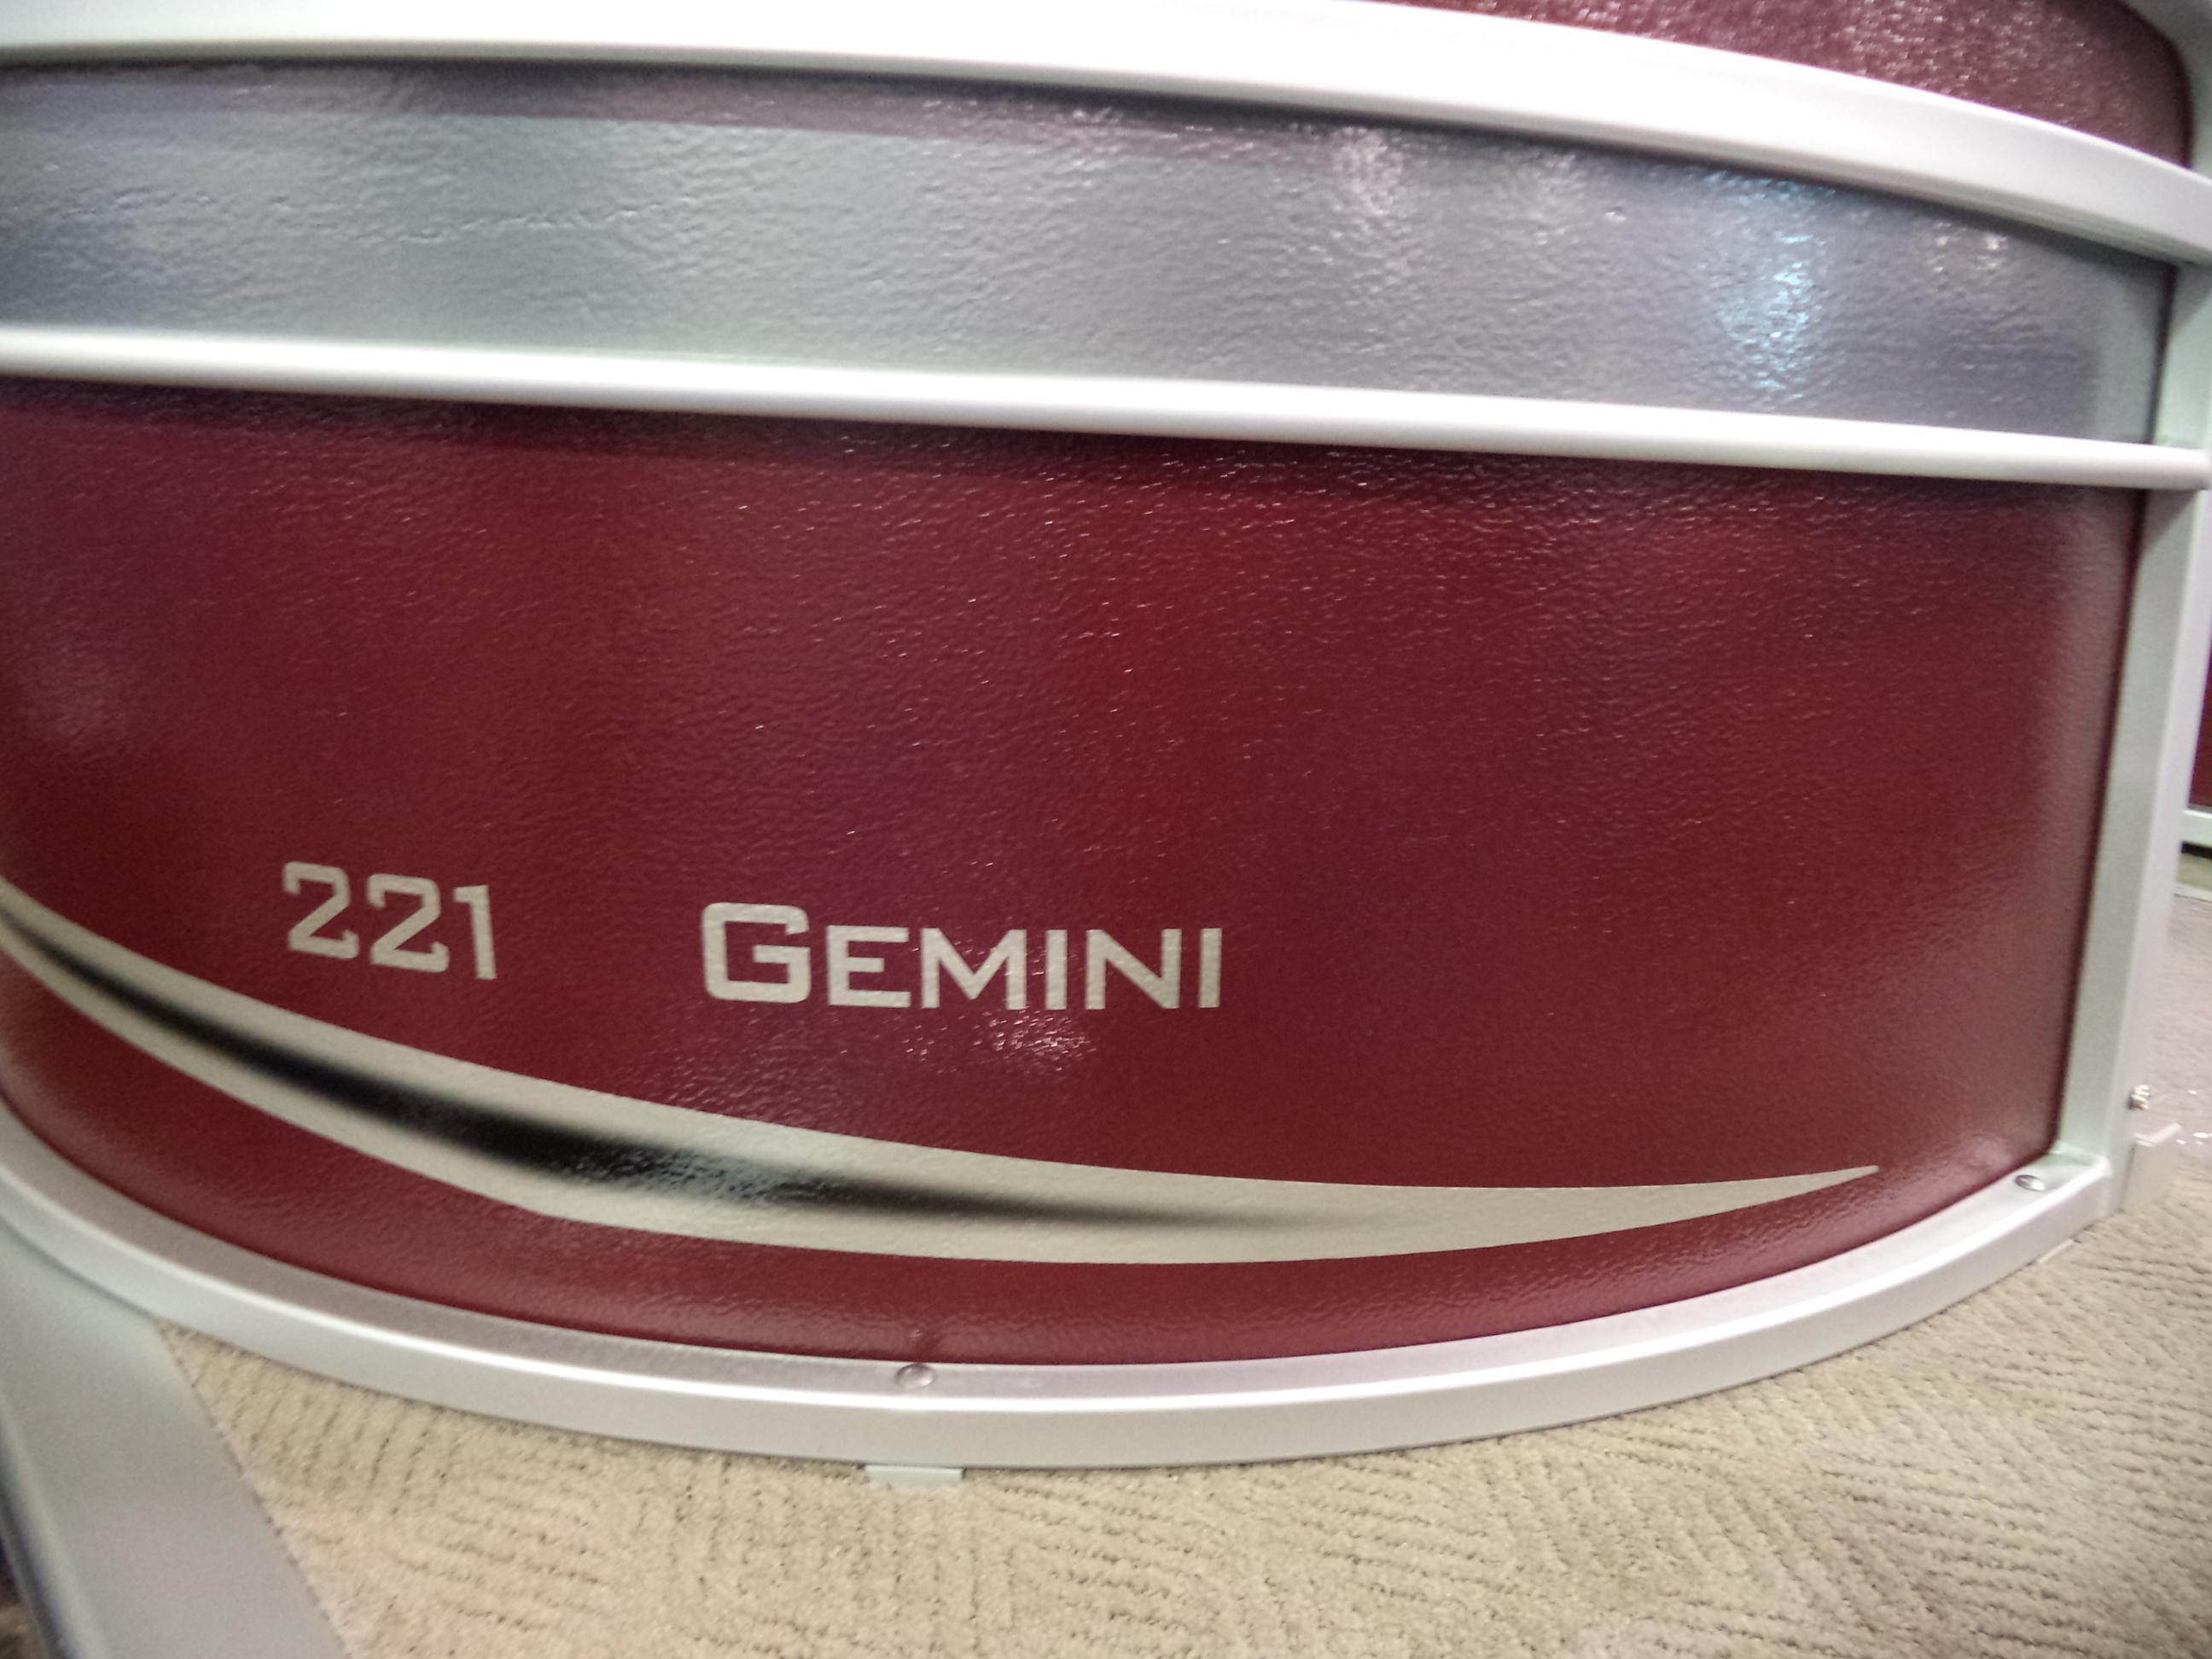 Premier 221 Gemini